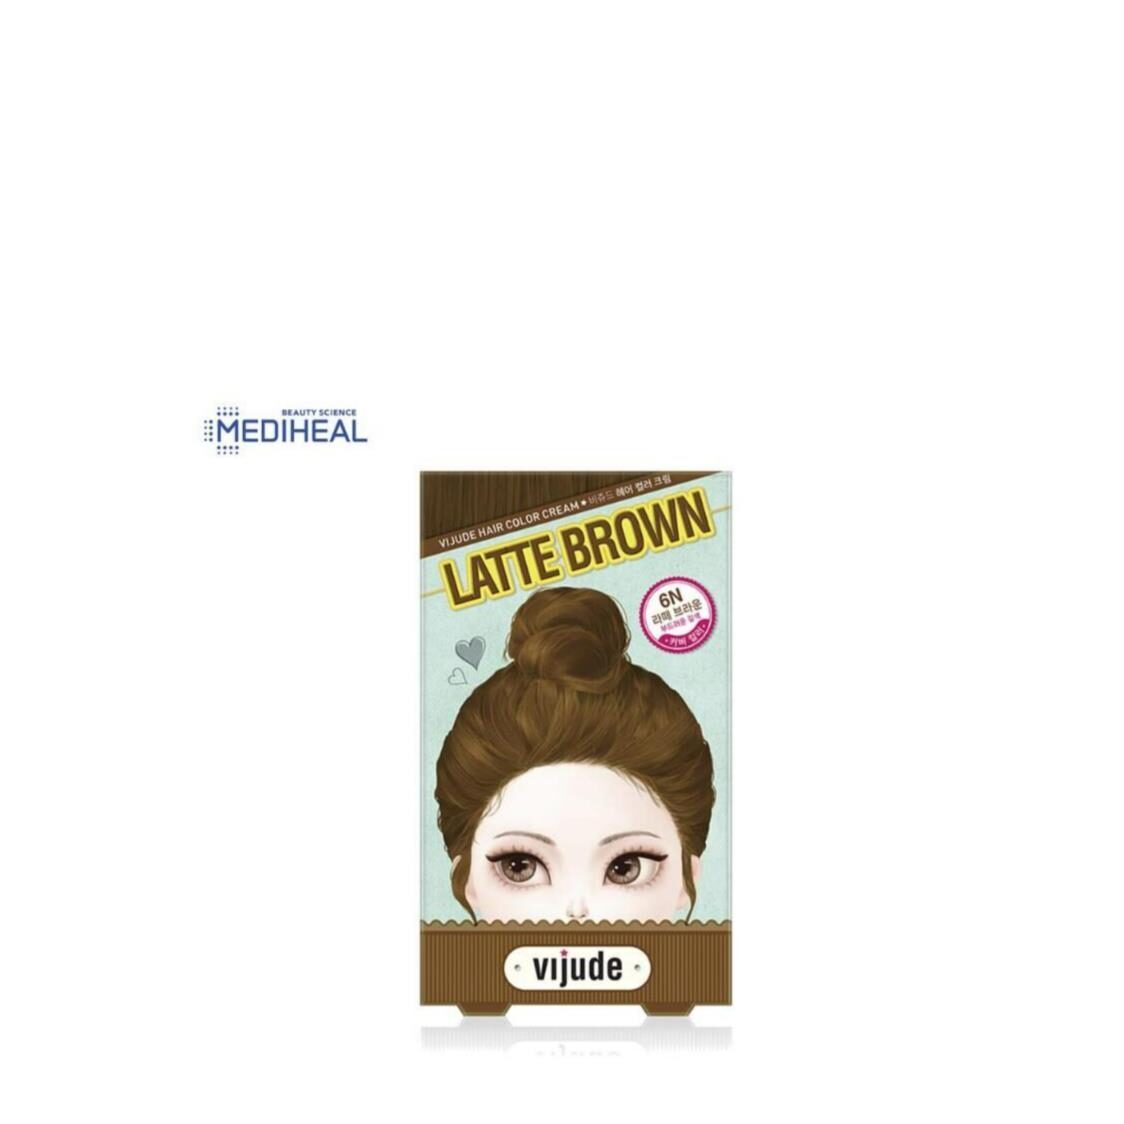 Mediheal Vijude Hair Color Cream 6N Latte Brown